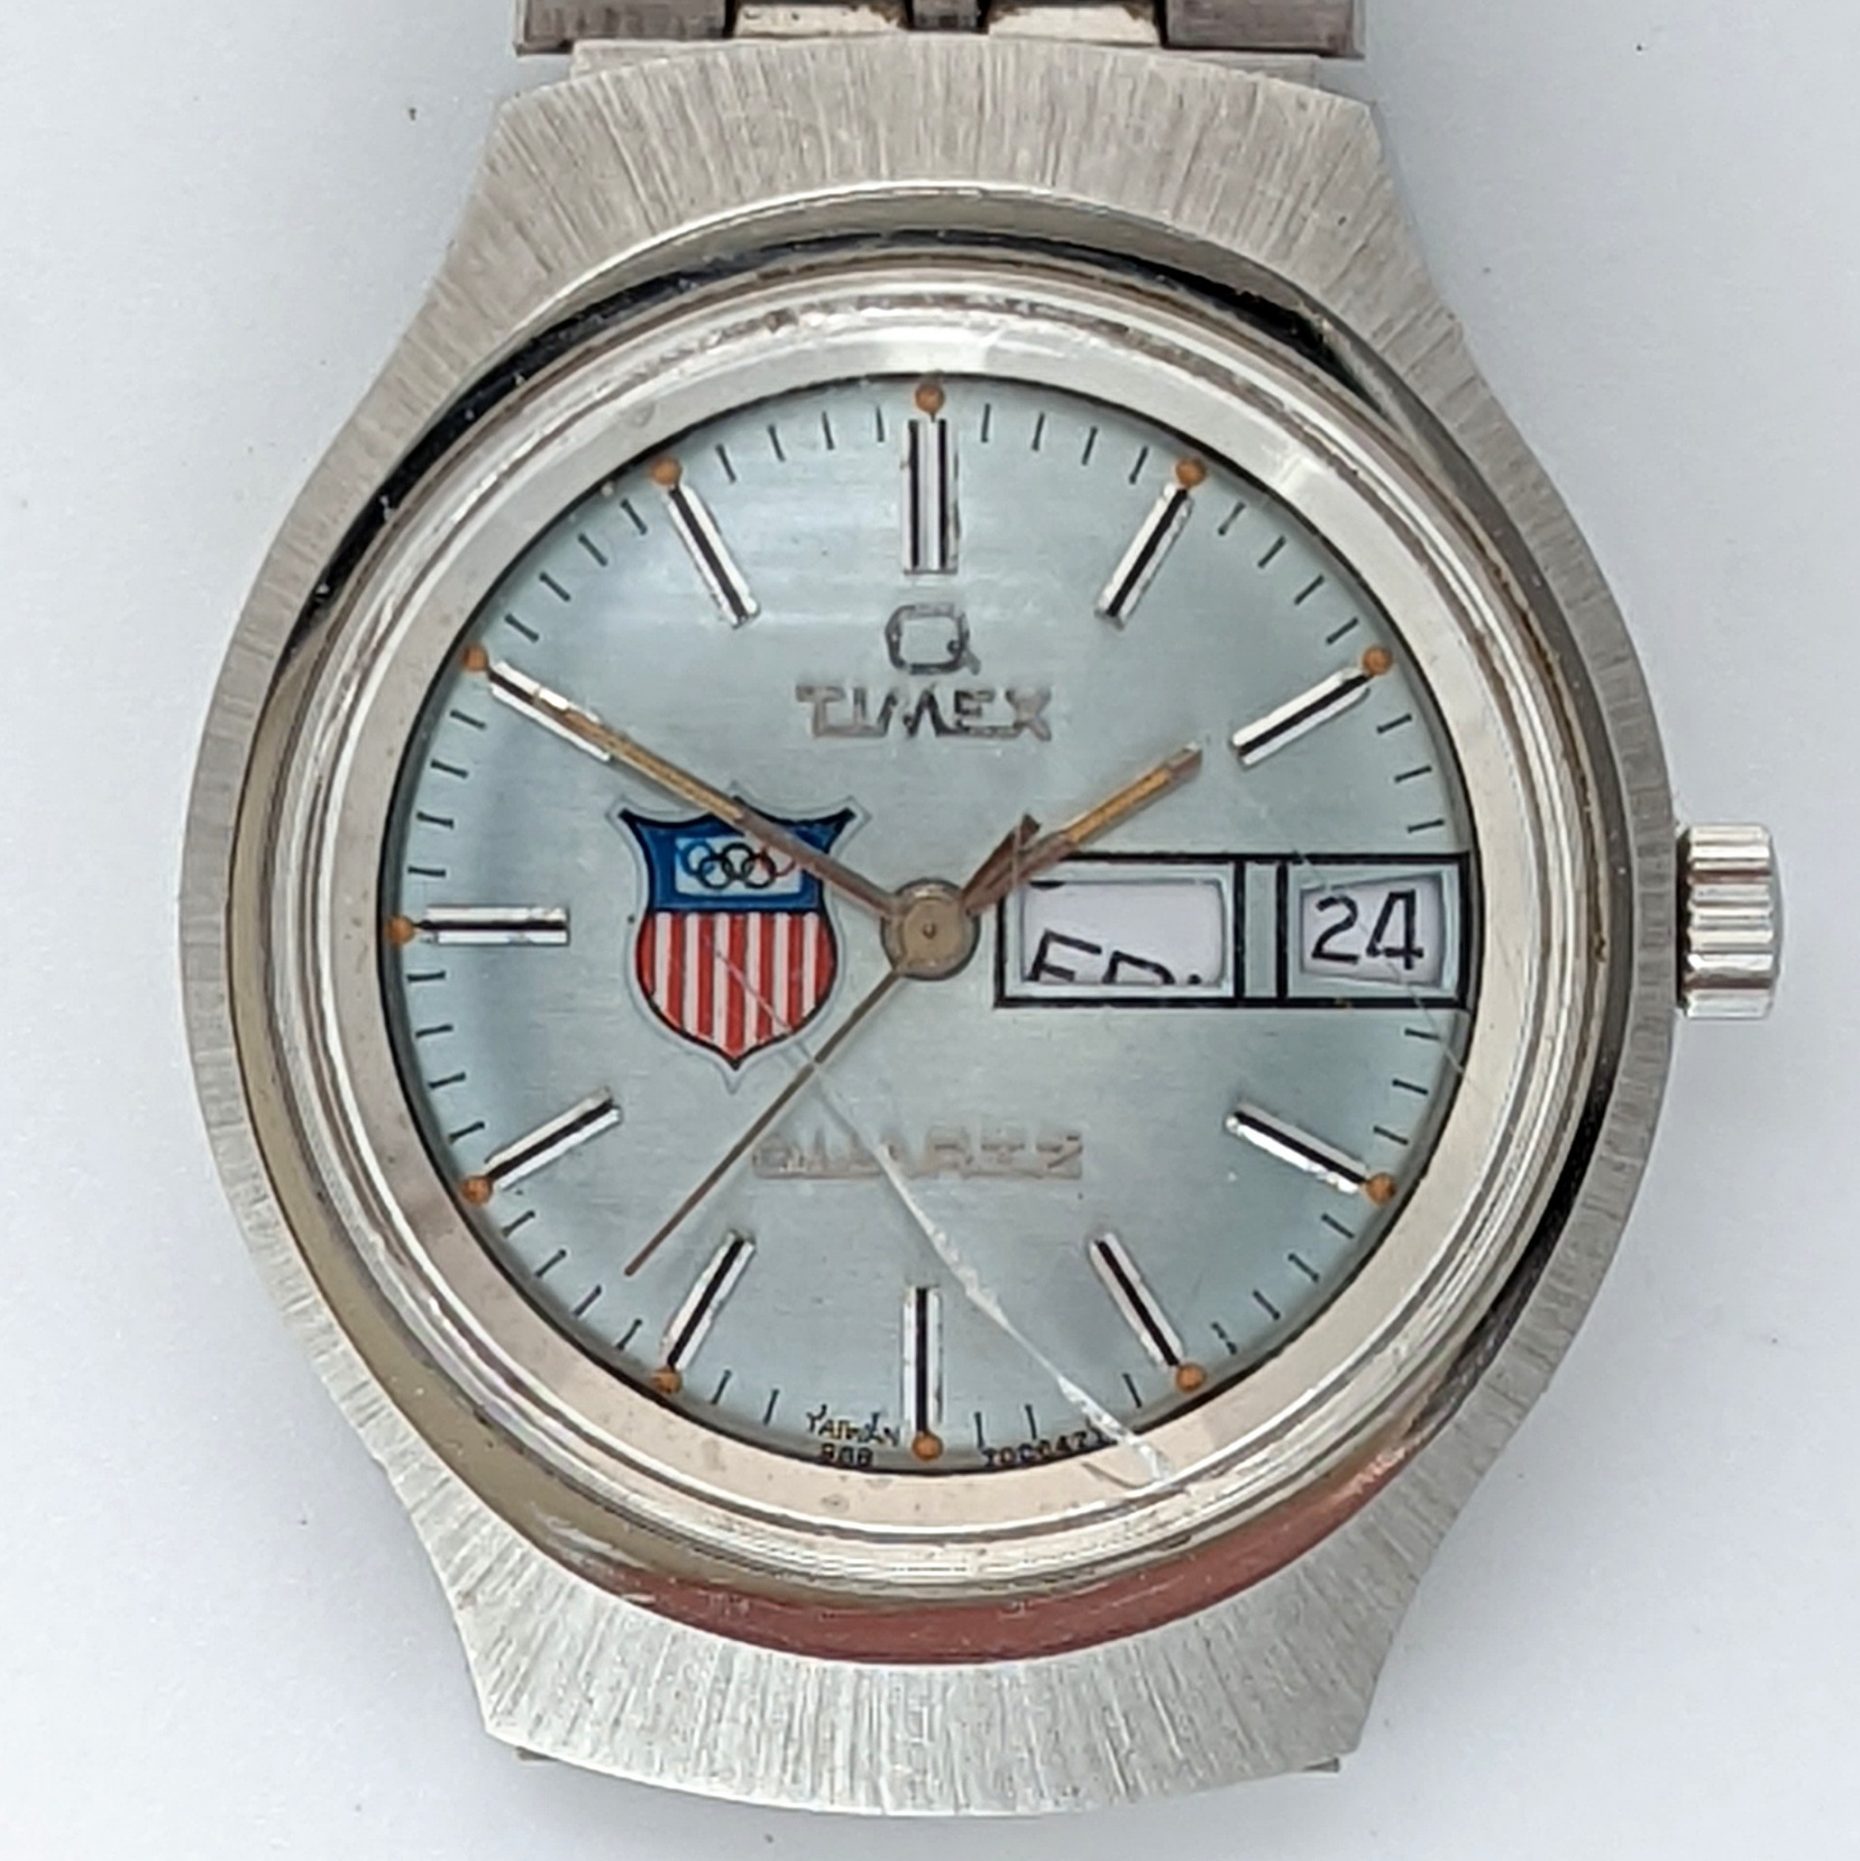 Timex Q 98870 06477 [1977] Olympic Watch